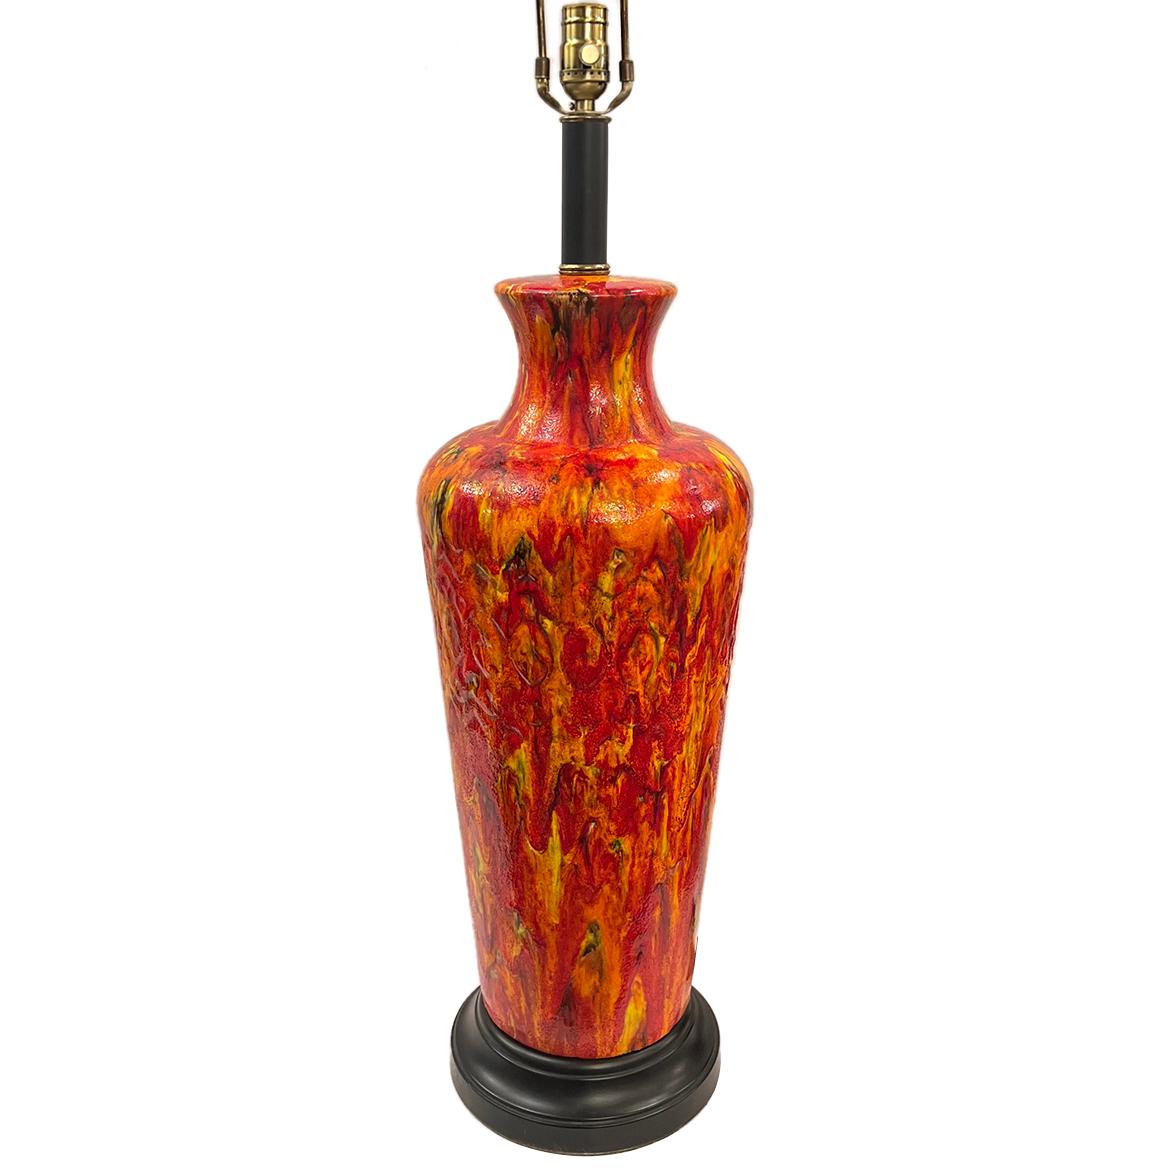 Eine große italienische Tischlampe aus Porzellan aus den 1960er Jahren mit orangefarbenem Glasurdekor.

Abmessungen:
Höhe des Körpers:27